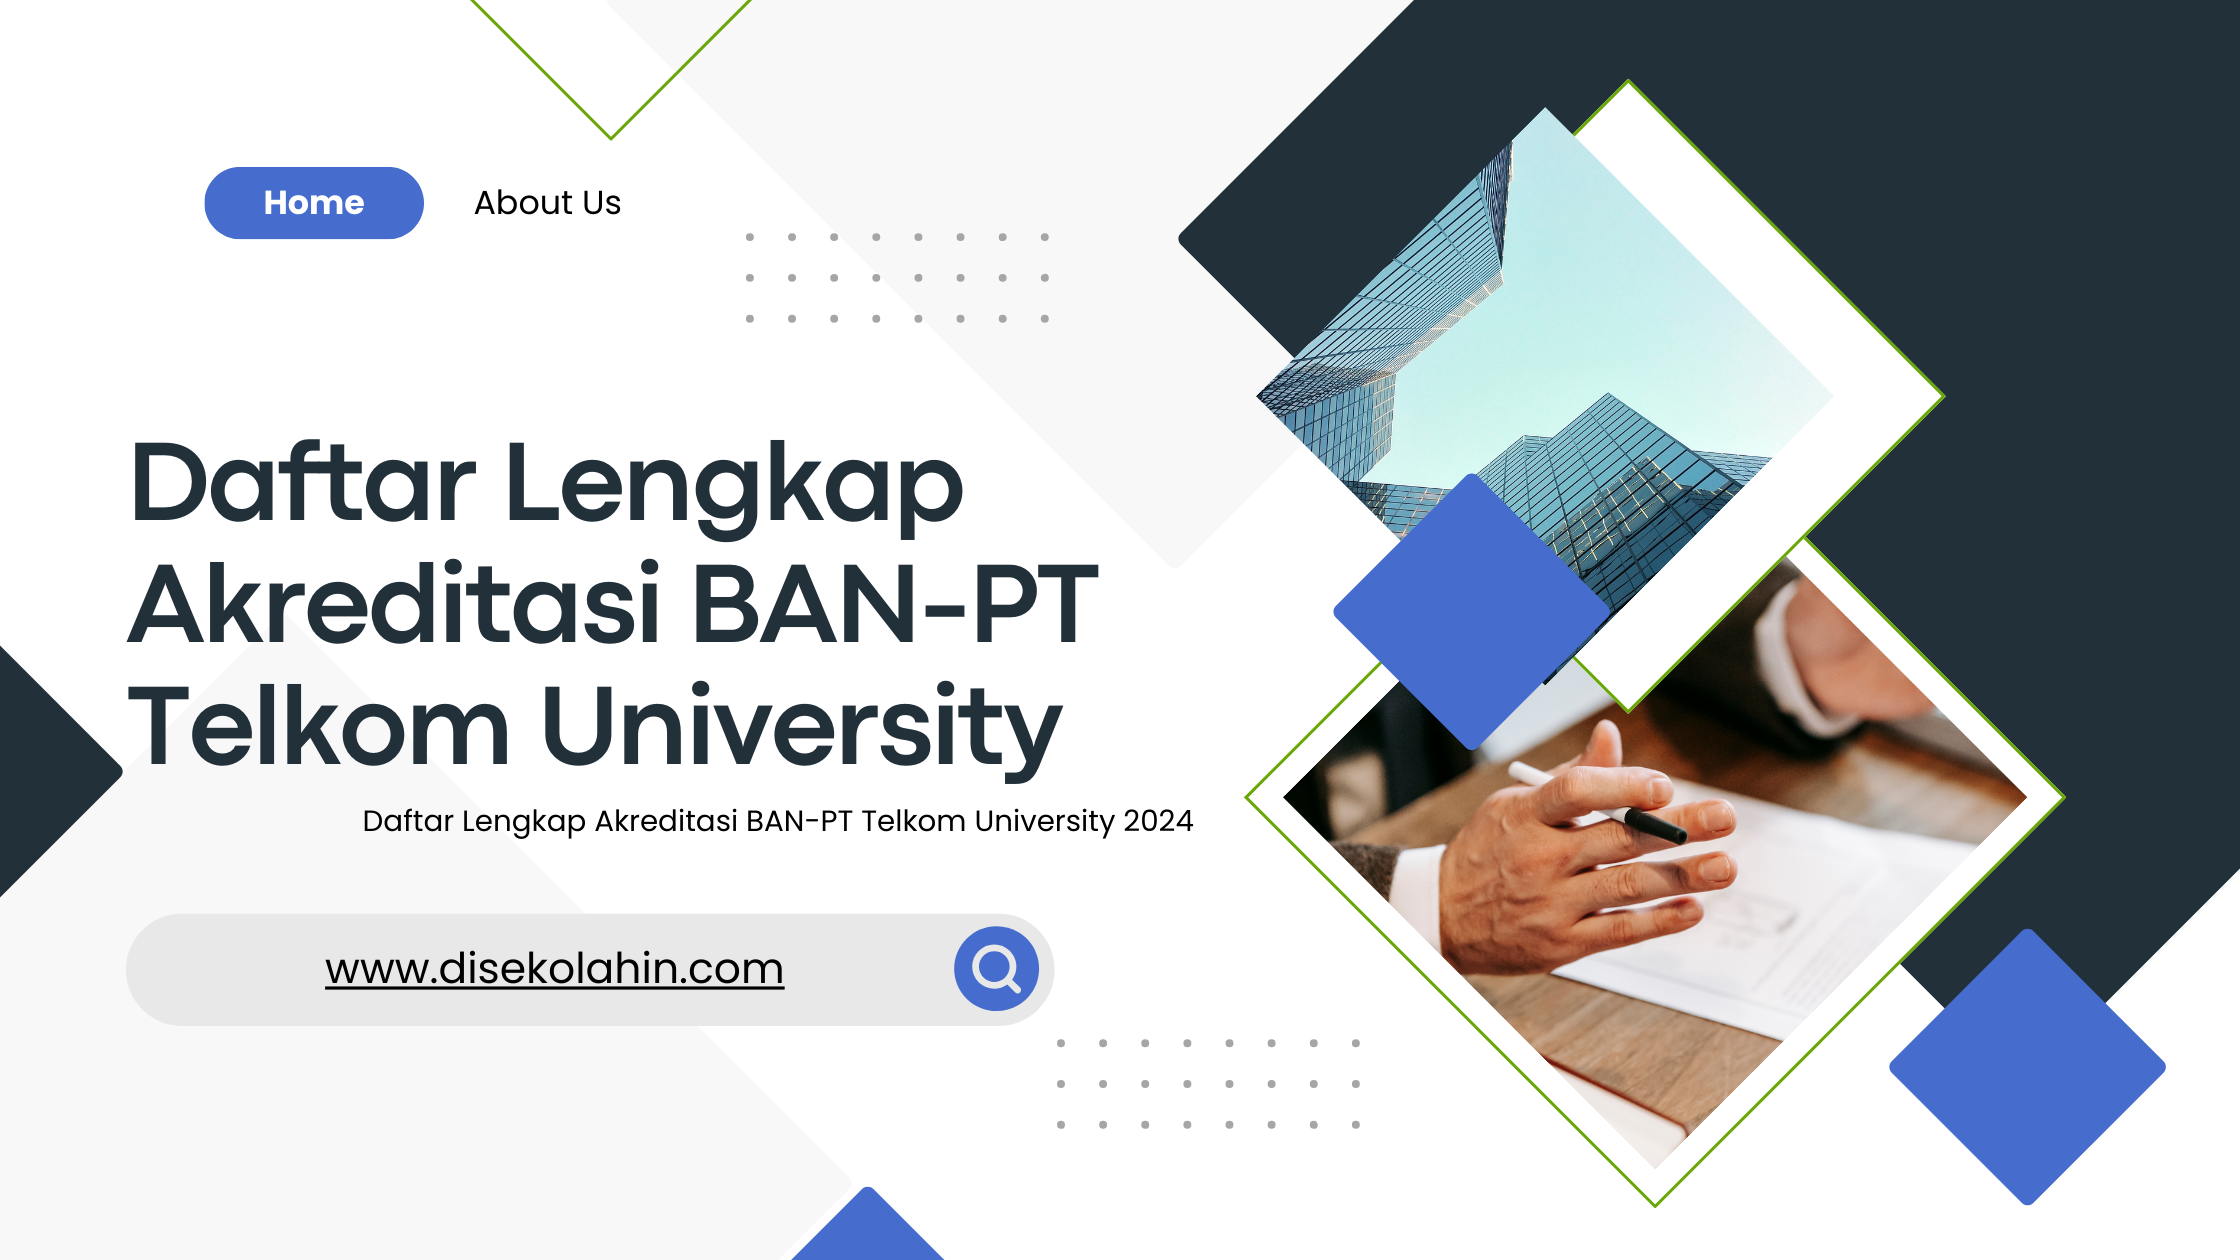 Daftar Lengkap Akreditasi BAN-PT Telkom University 2024